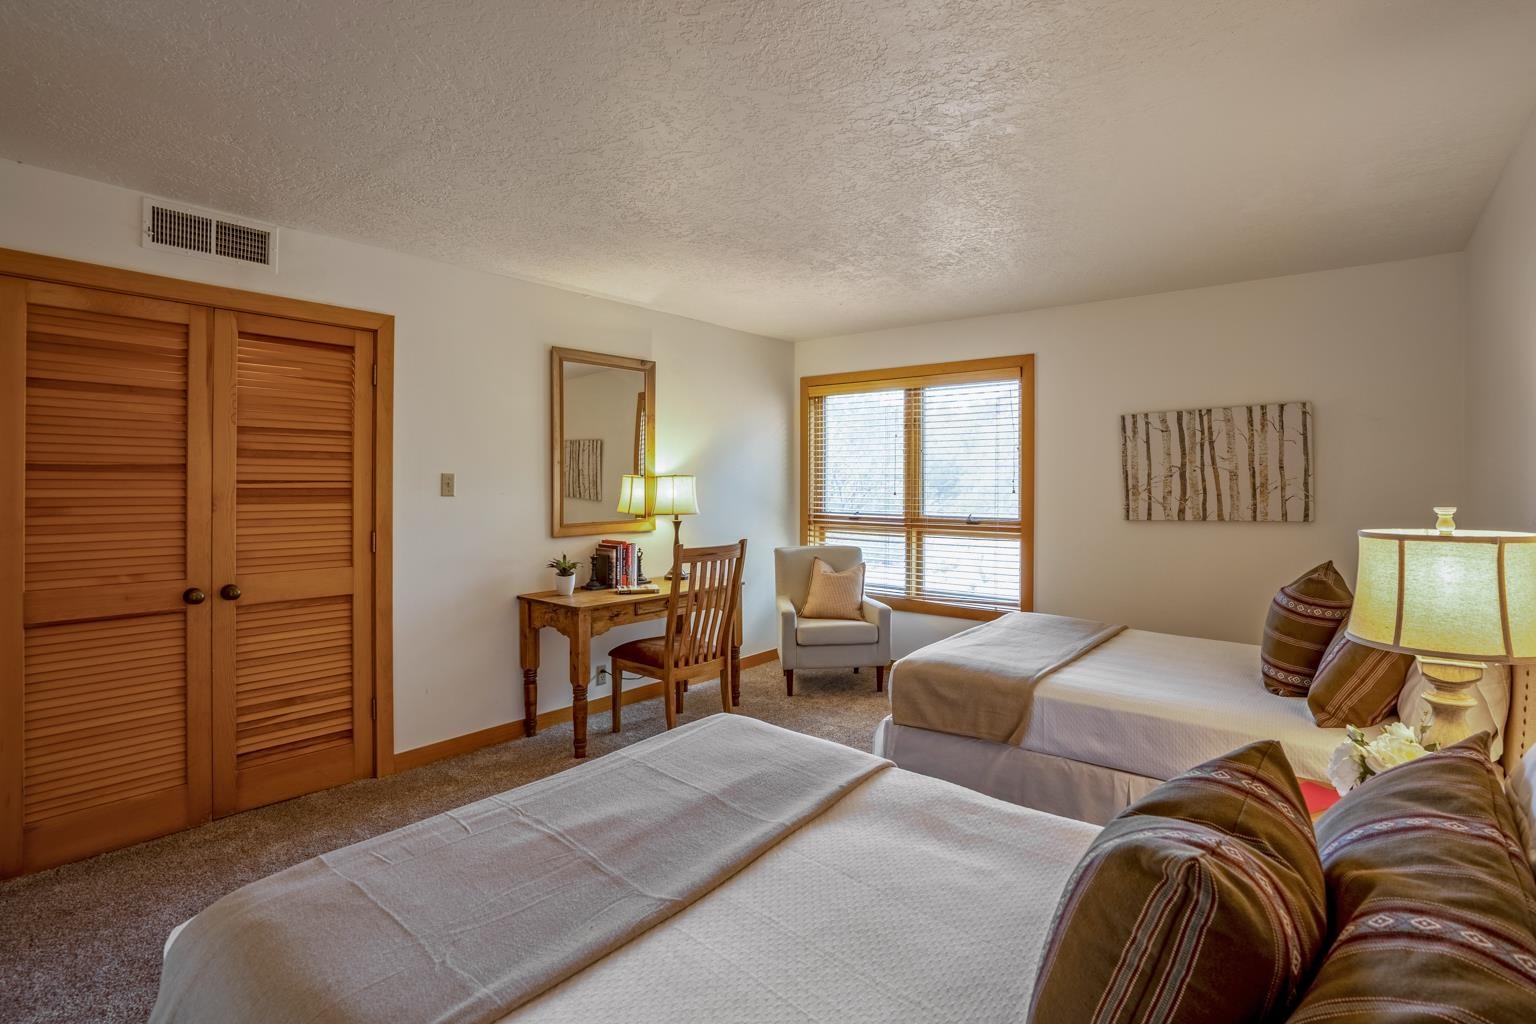 13 Pueblo De Cielo 202-402, Santa Fe, New Mexico 87506, 2 Bedrooms Bedrooms, ,2 BathroomsBathrooms,Residential,For Sale,13 Pueblo De Cielo 202-402,202101756